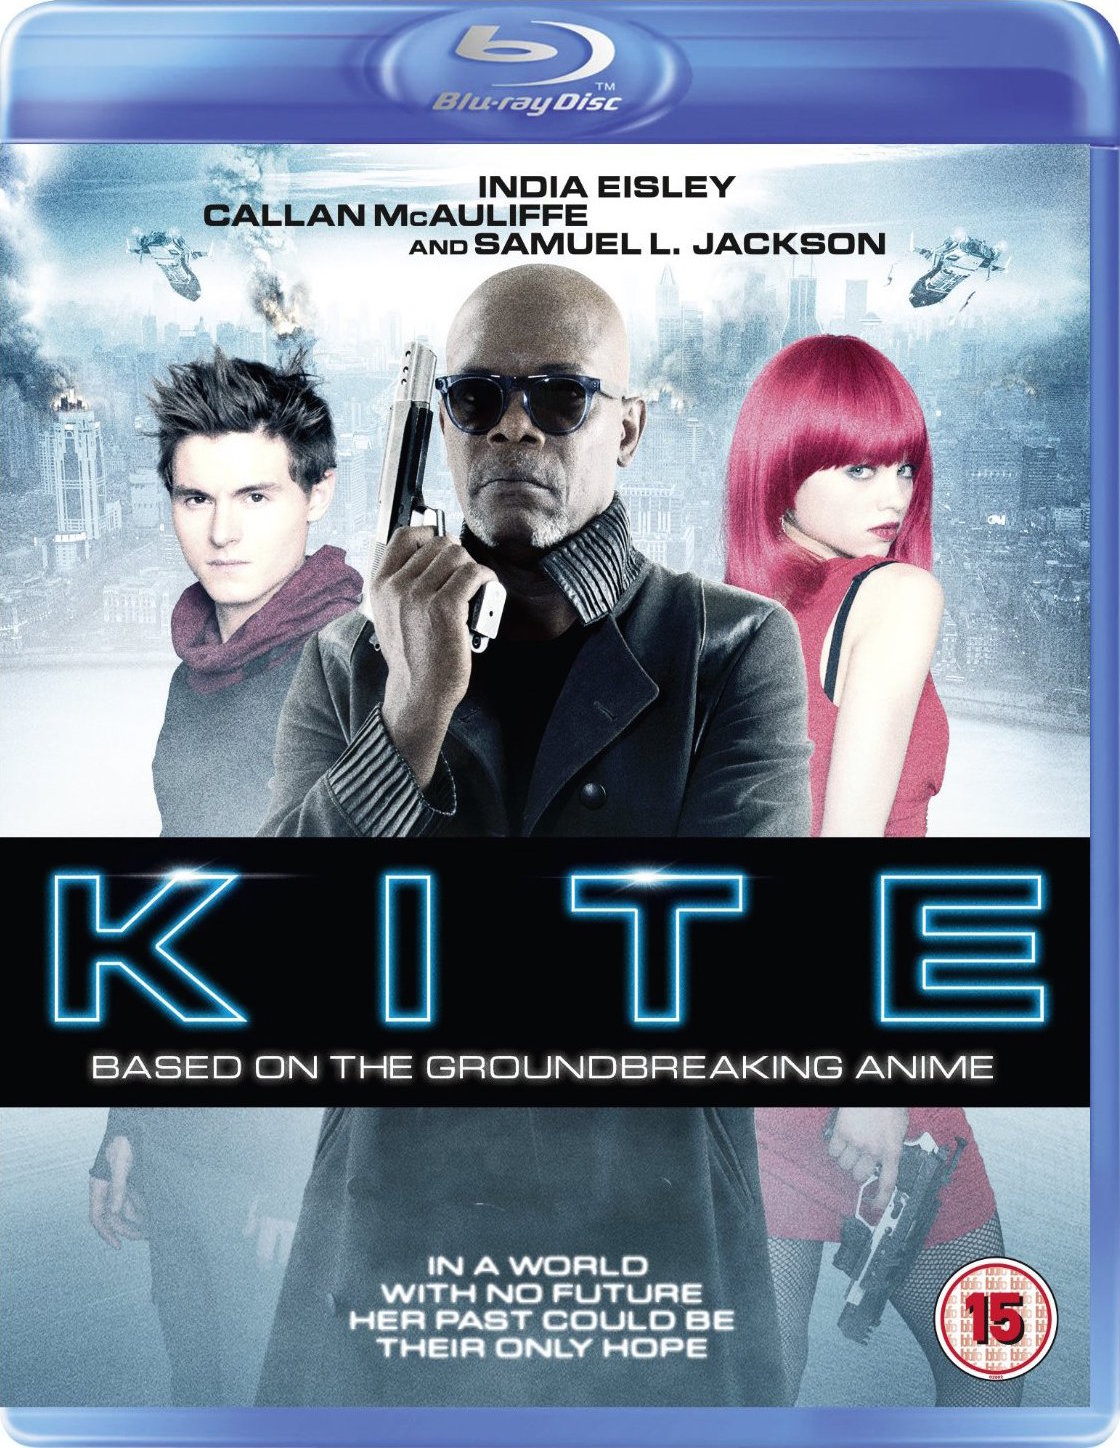 kite liberator 2 full movie